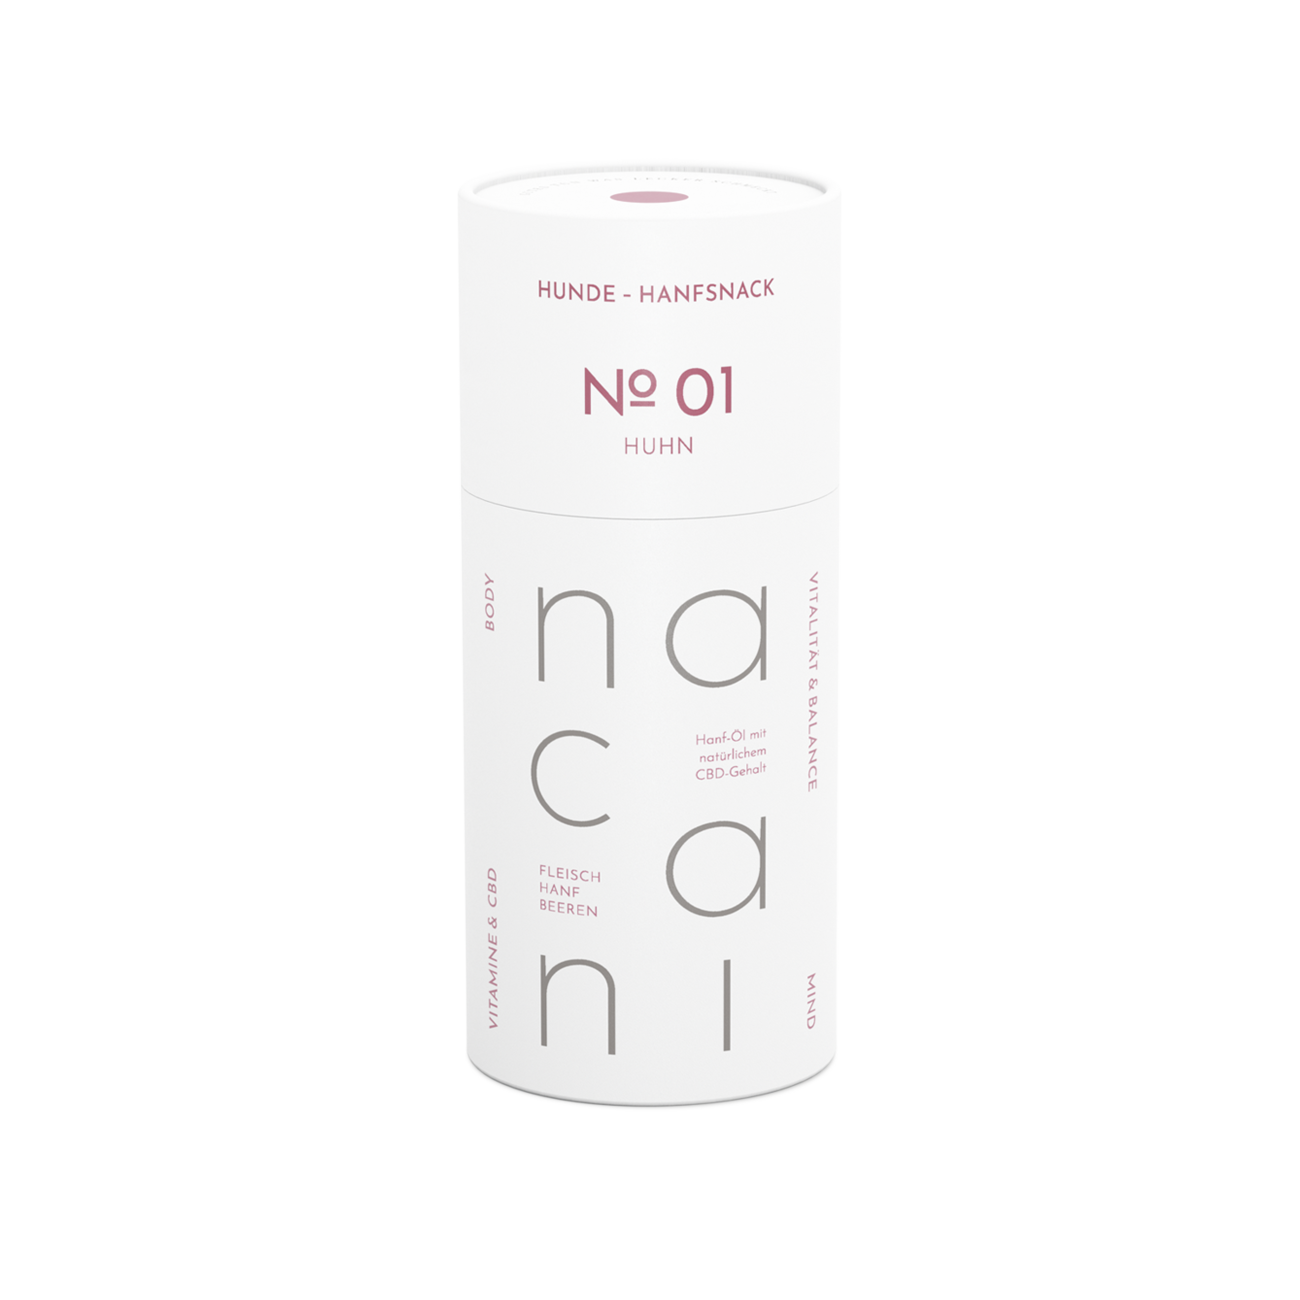 Nacani | Hanf-Leckerli Huhn mit natürlichem CBD-Anteil-PetsFinest